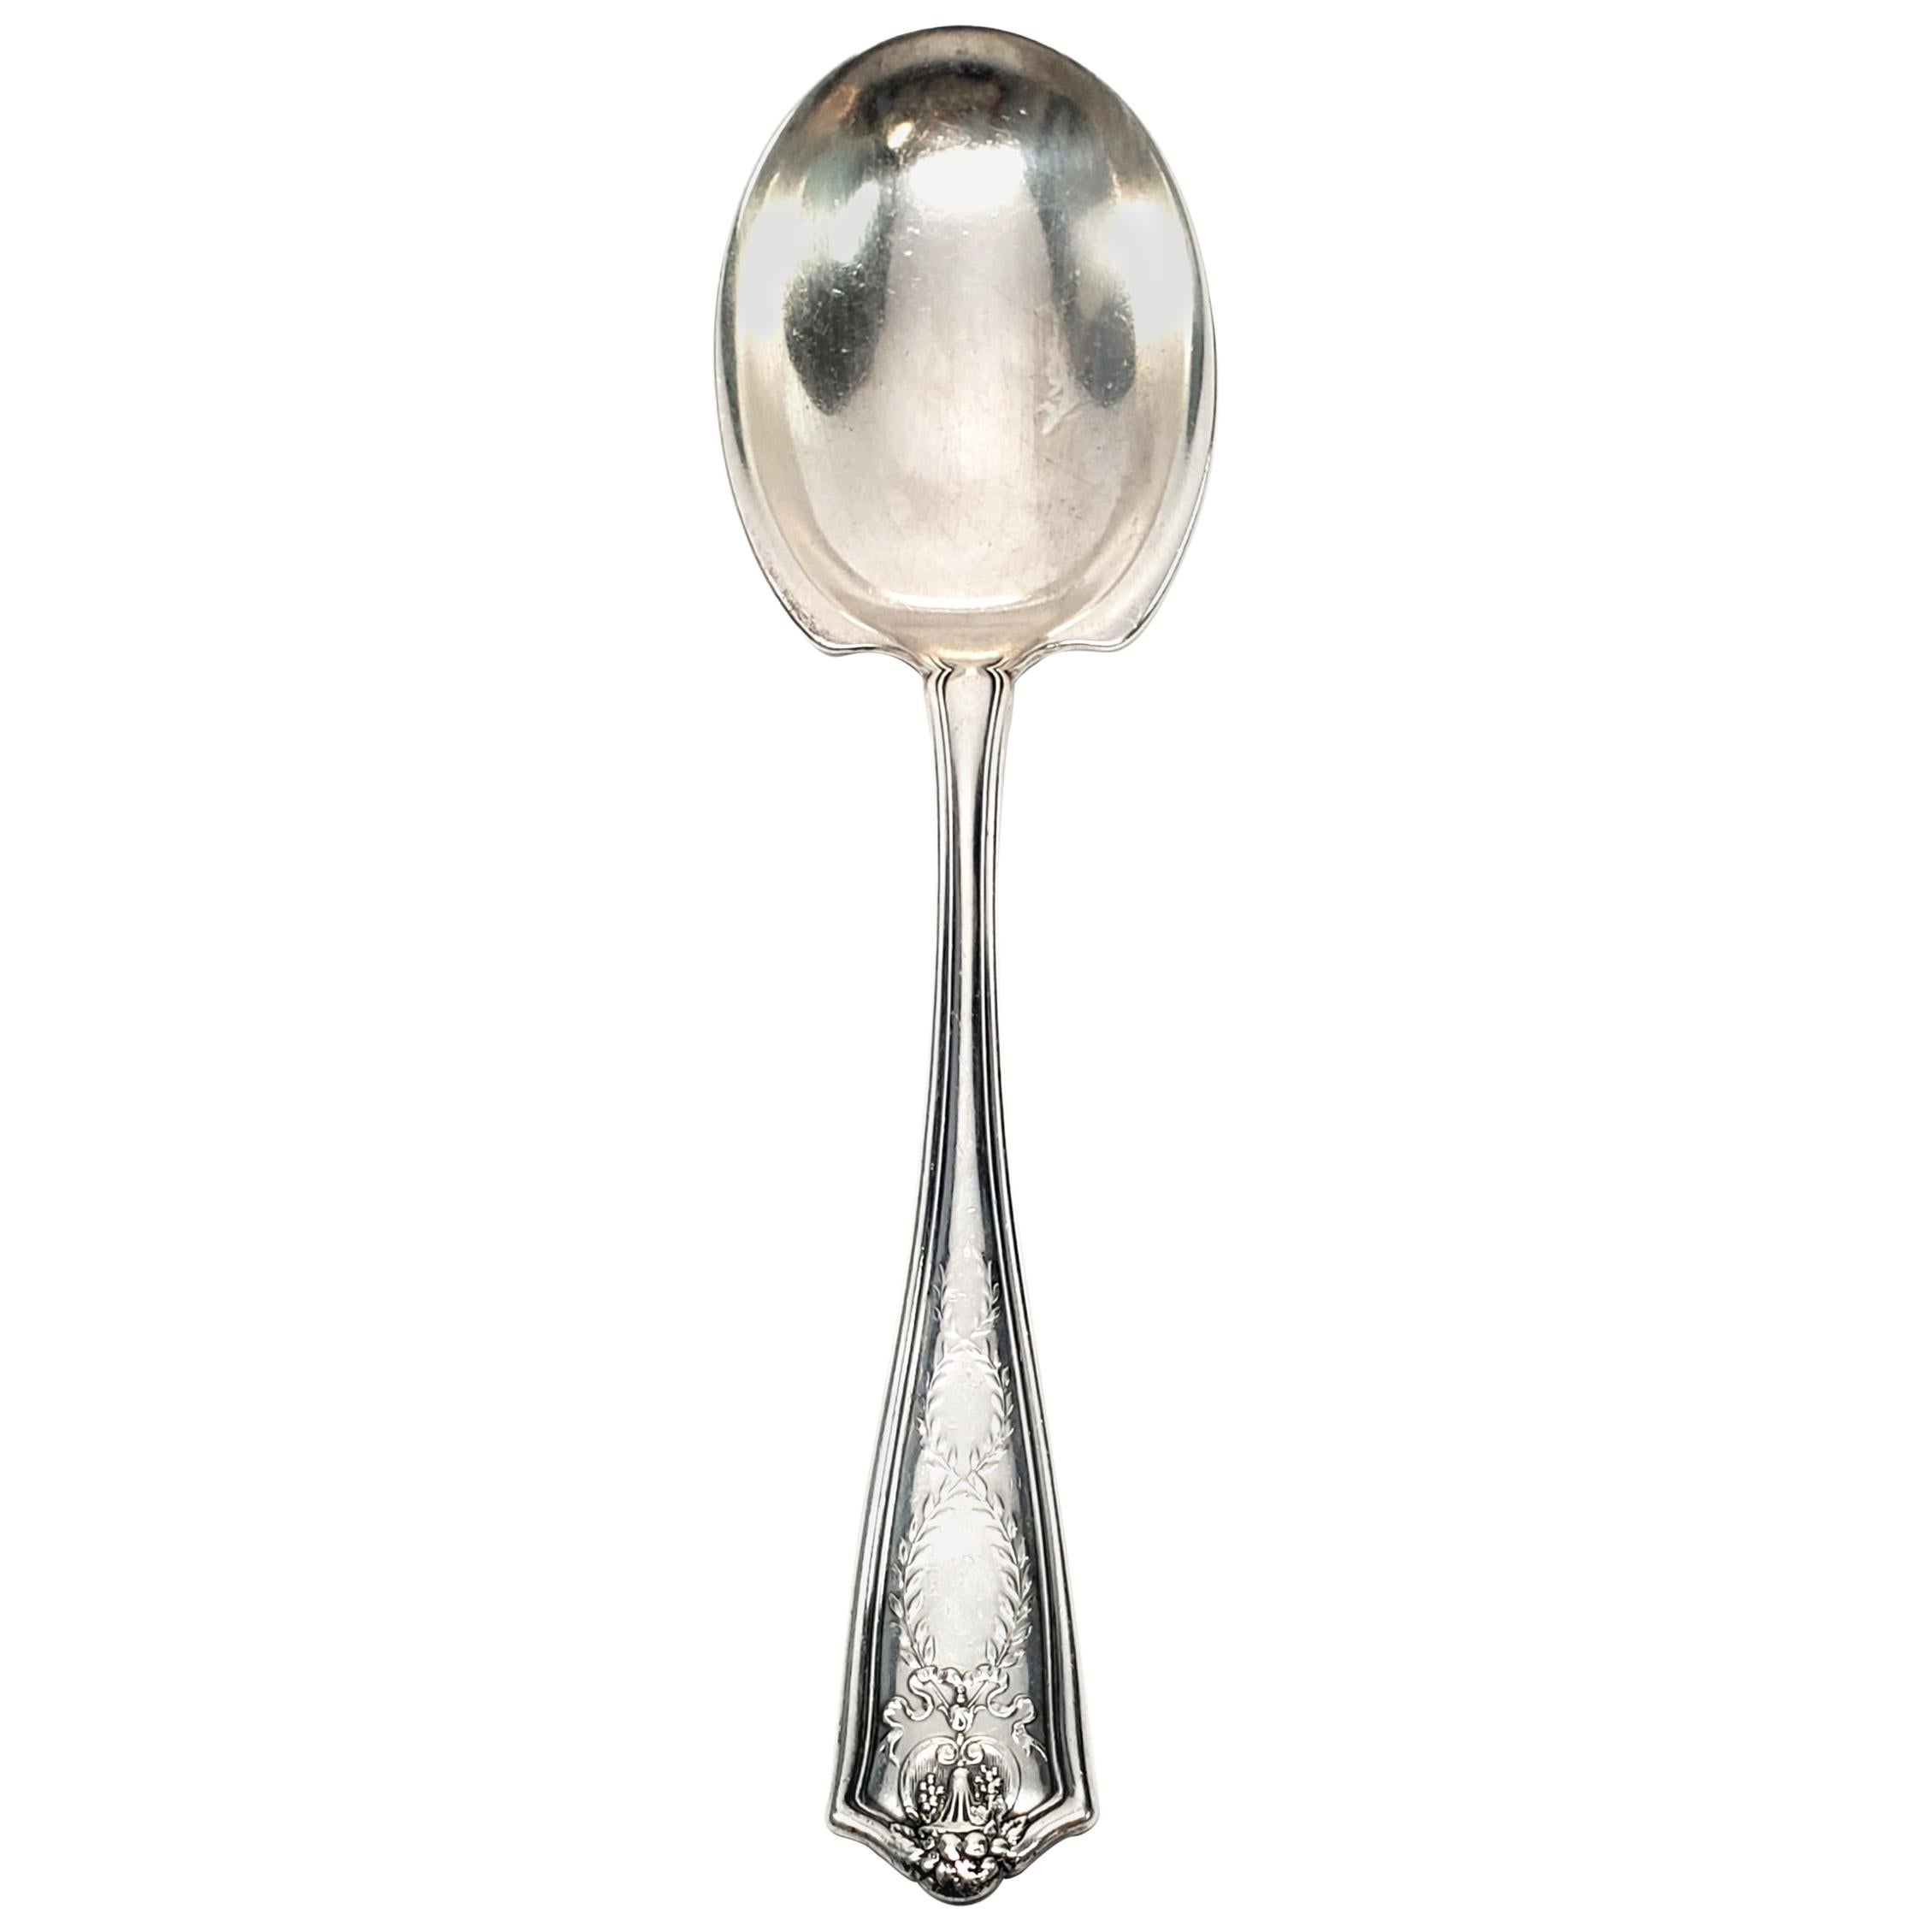 tiffany & co spoon